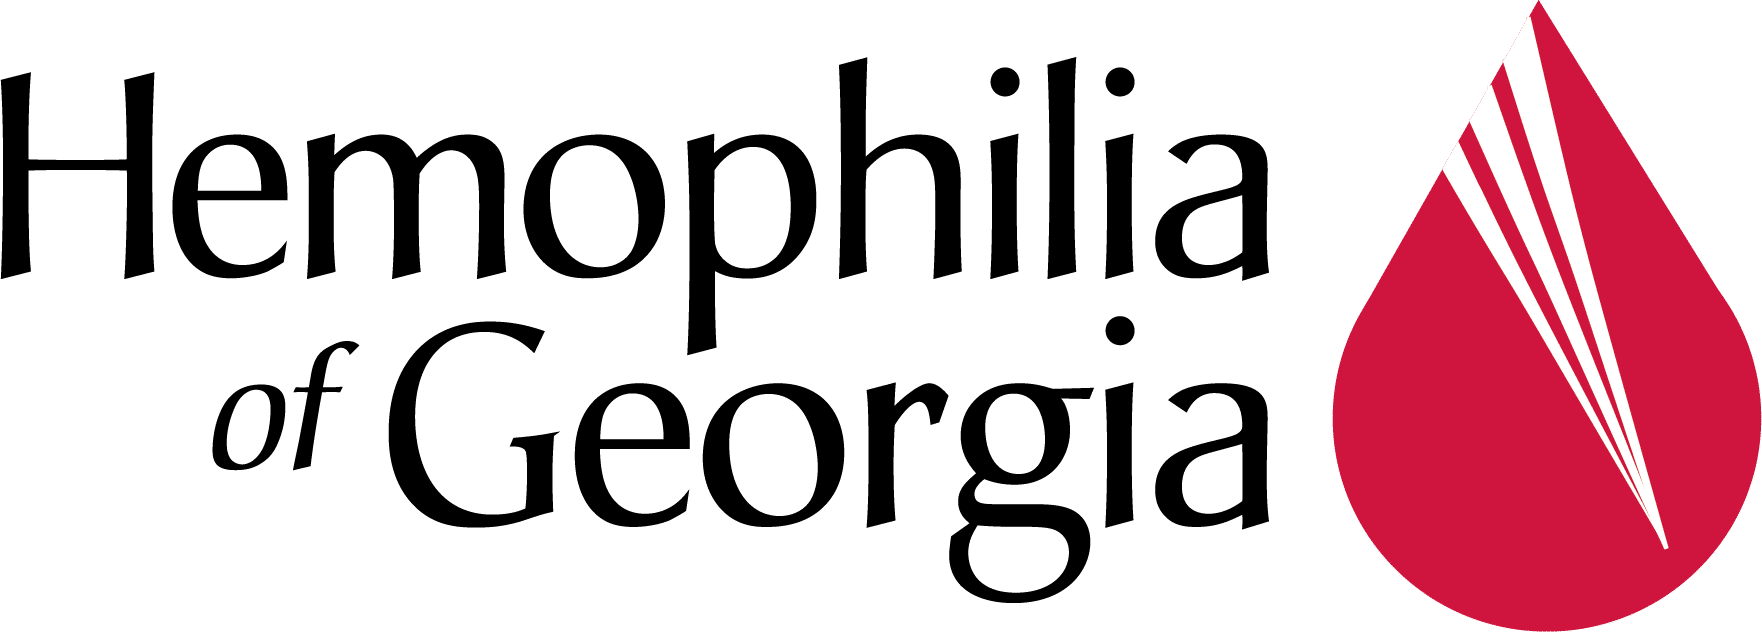 Hemophilia of Georgia